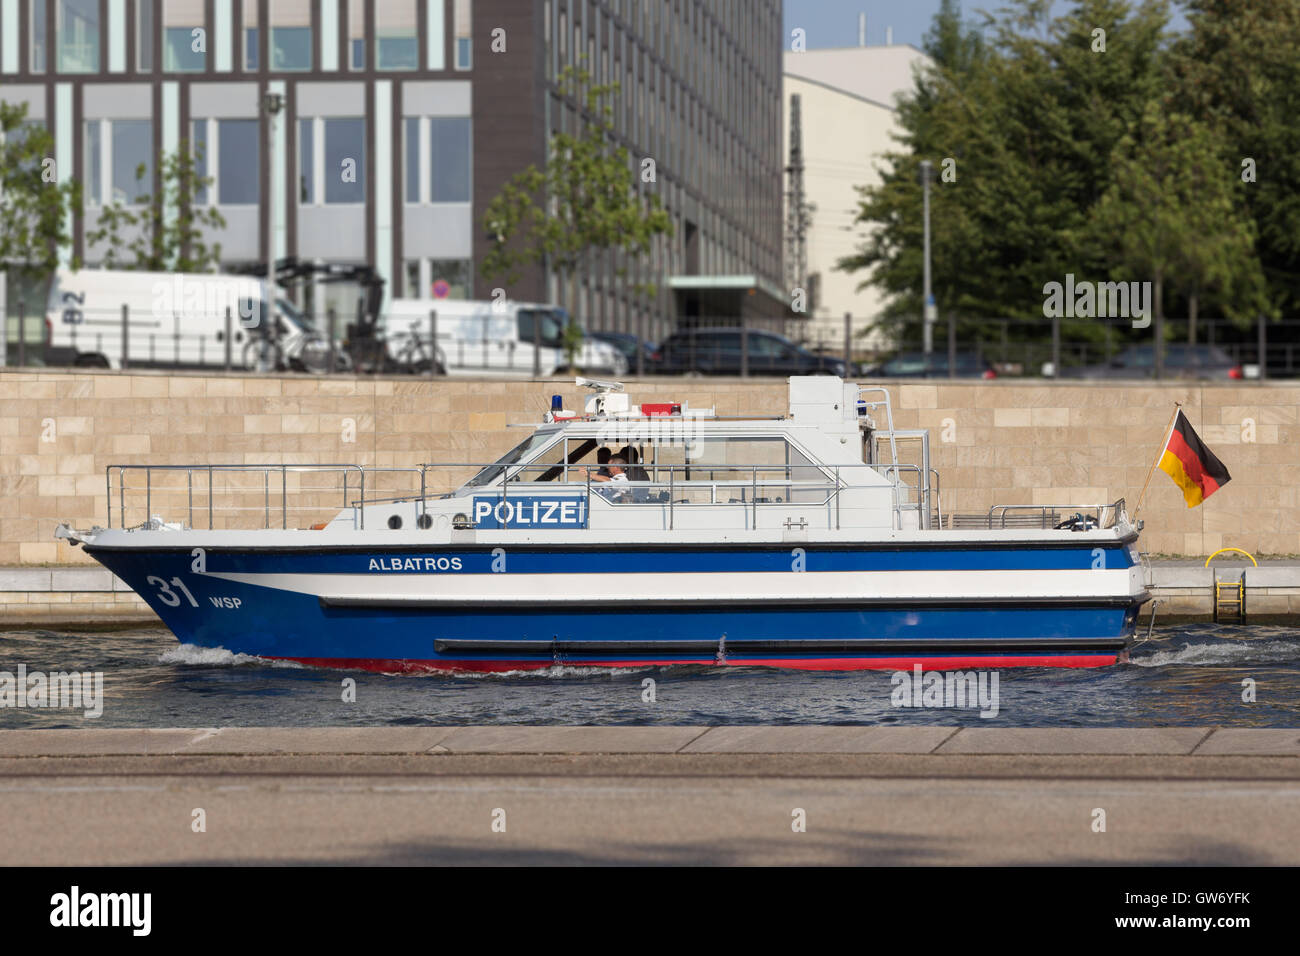 Police boat on river Spree in Berlin, Germany Stock Photo